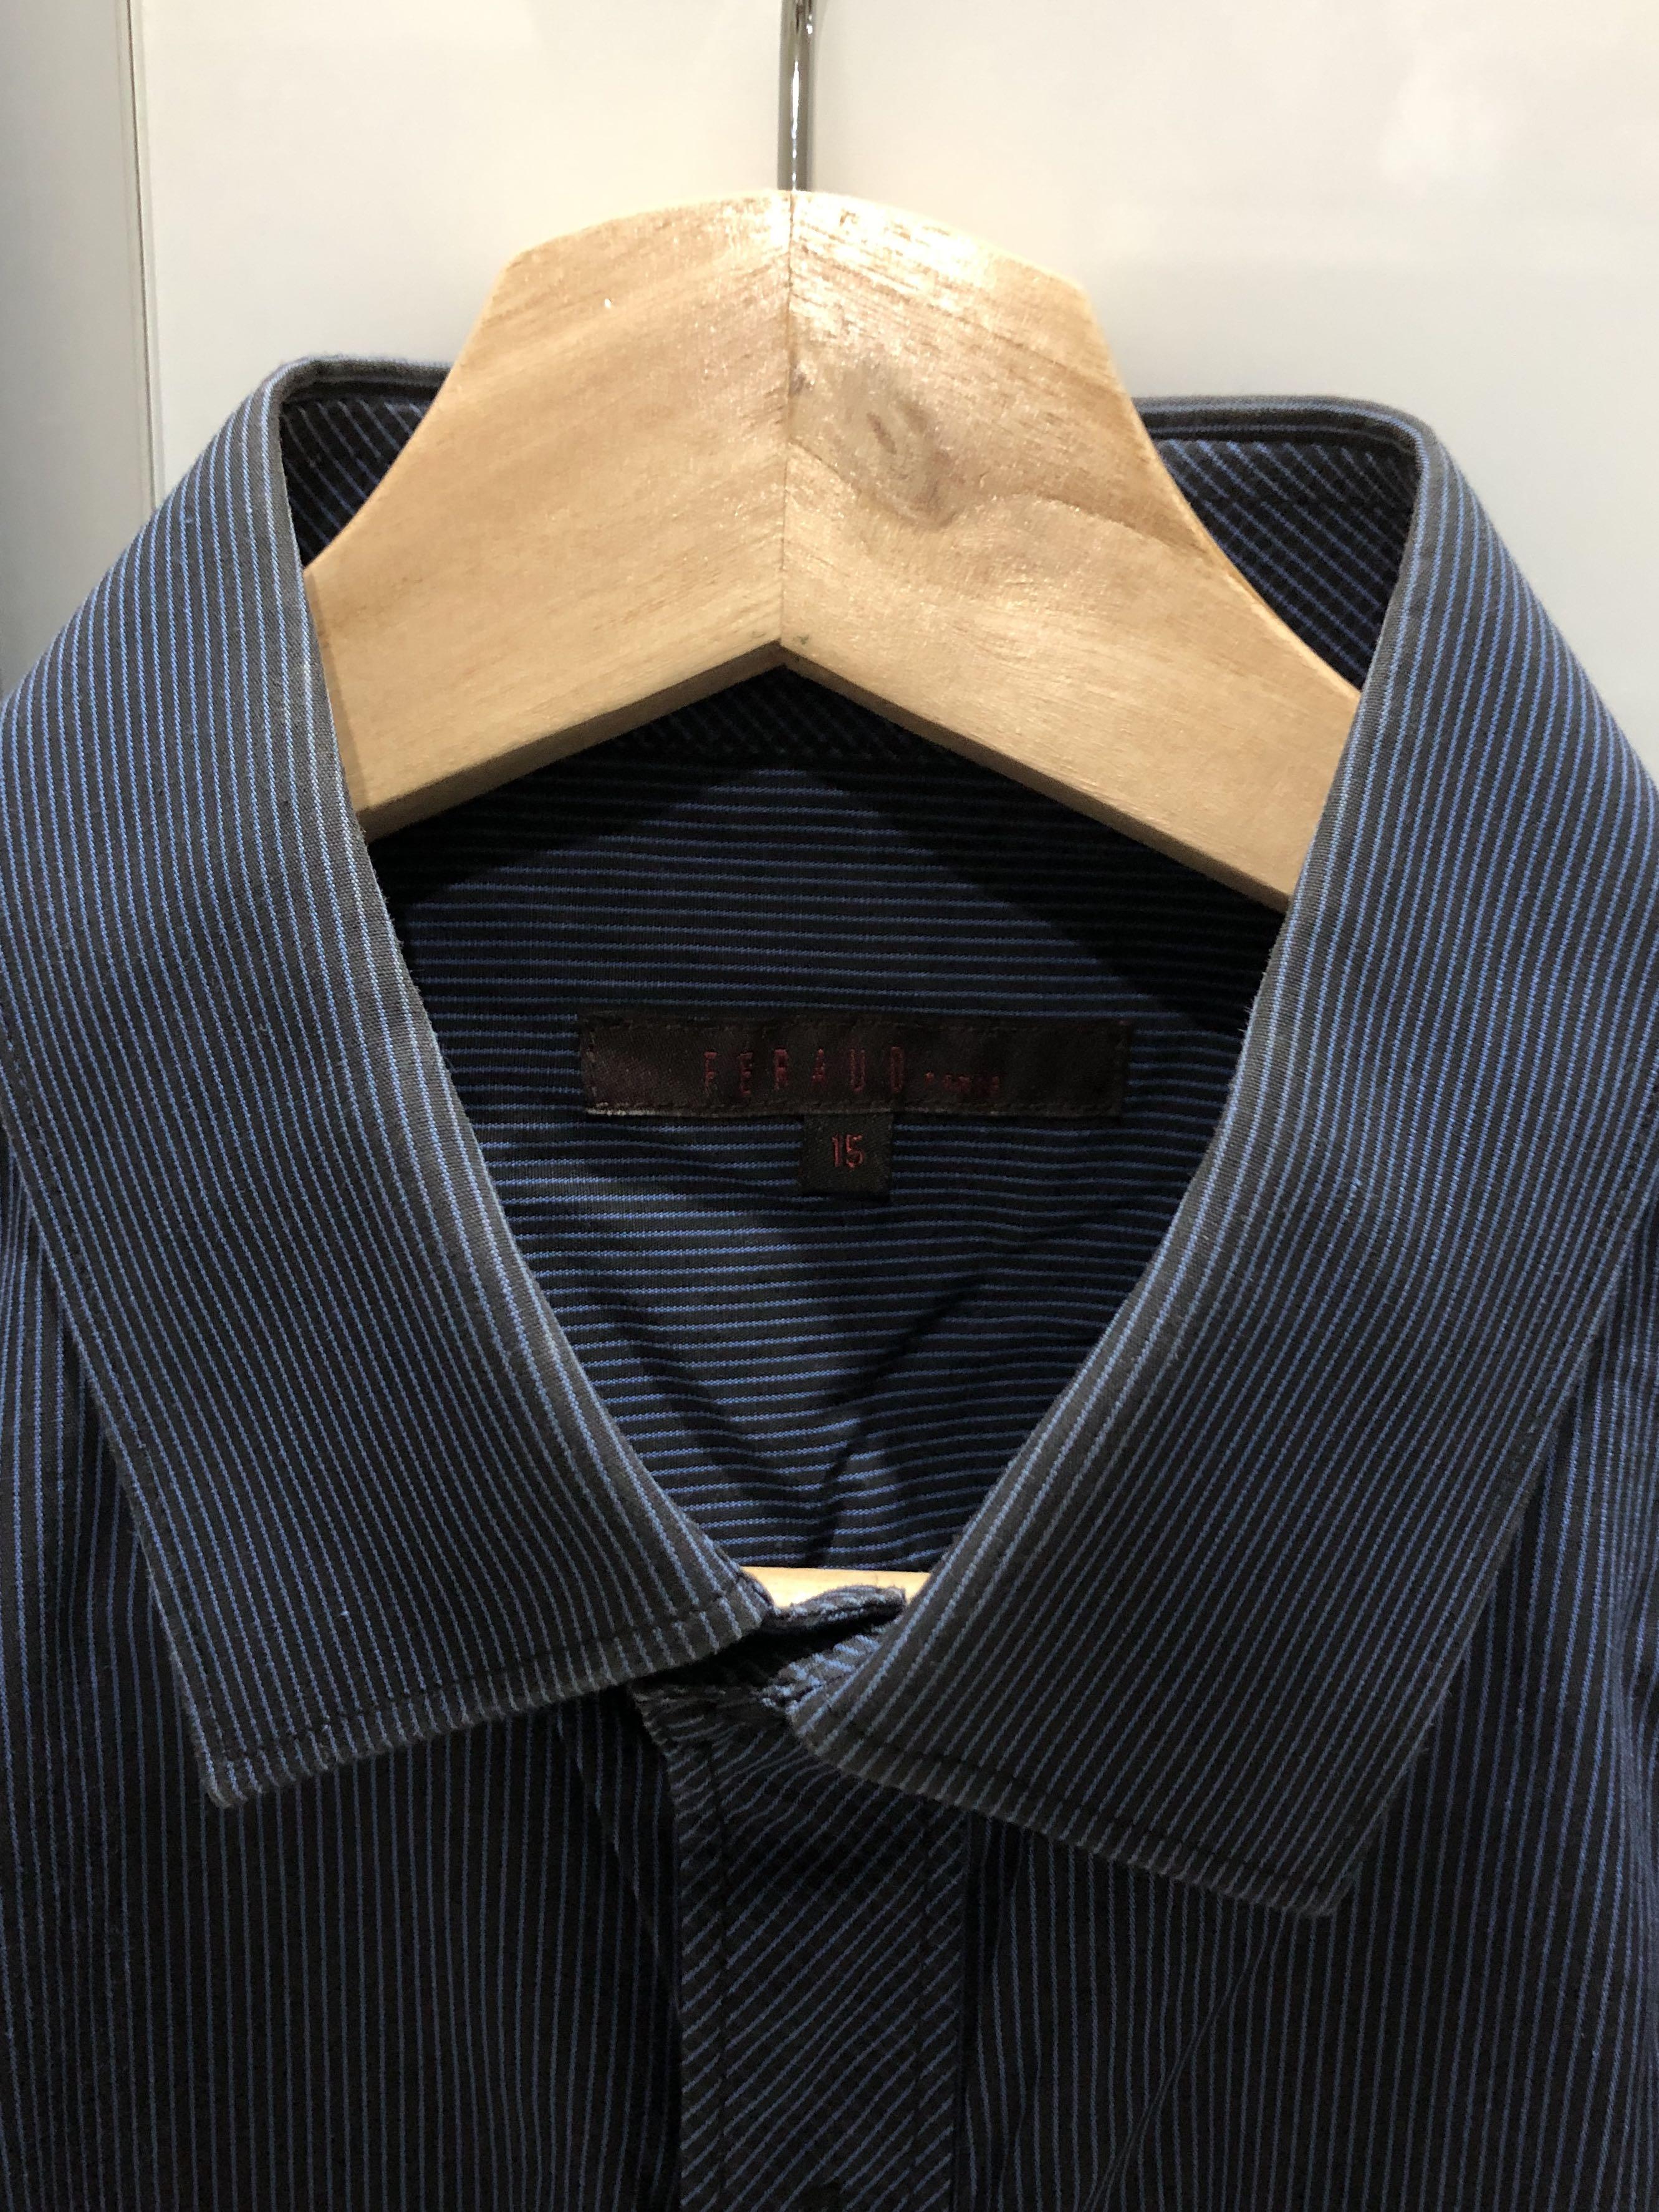 Feraud Paris blue mens long sleeves shirt, Men's Fashion, Tops & Sets,  Tshirts & Polo Shirts on Carousell